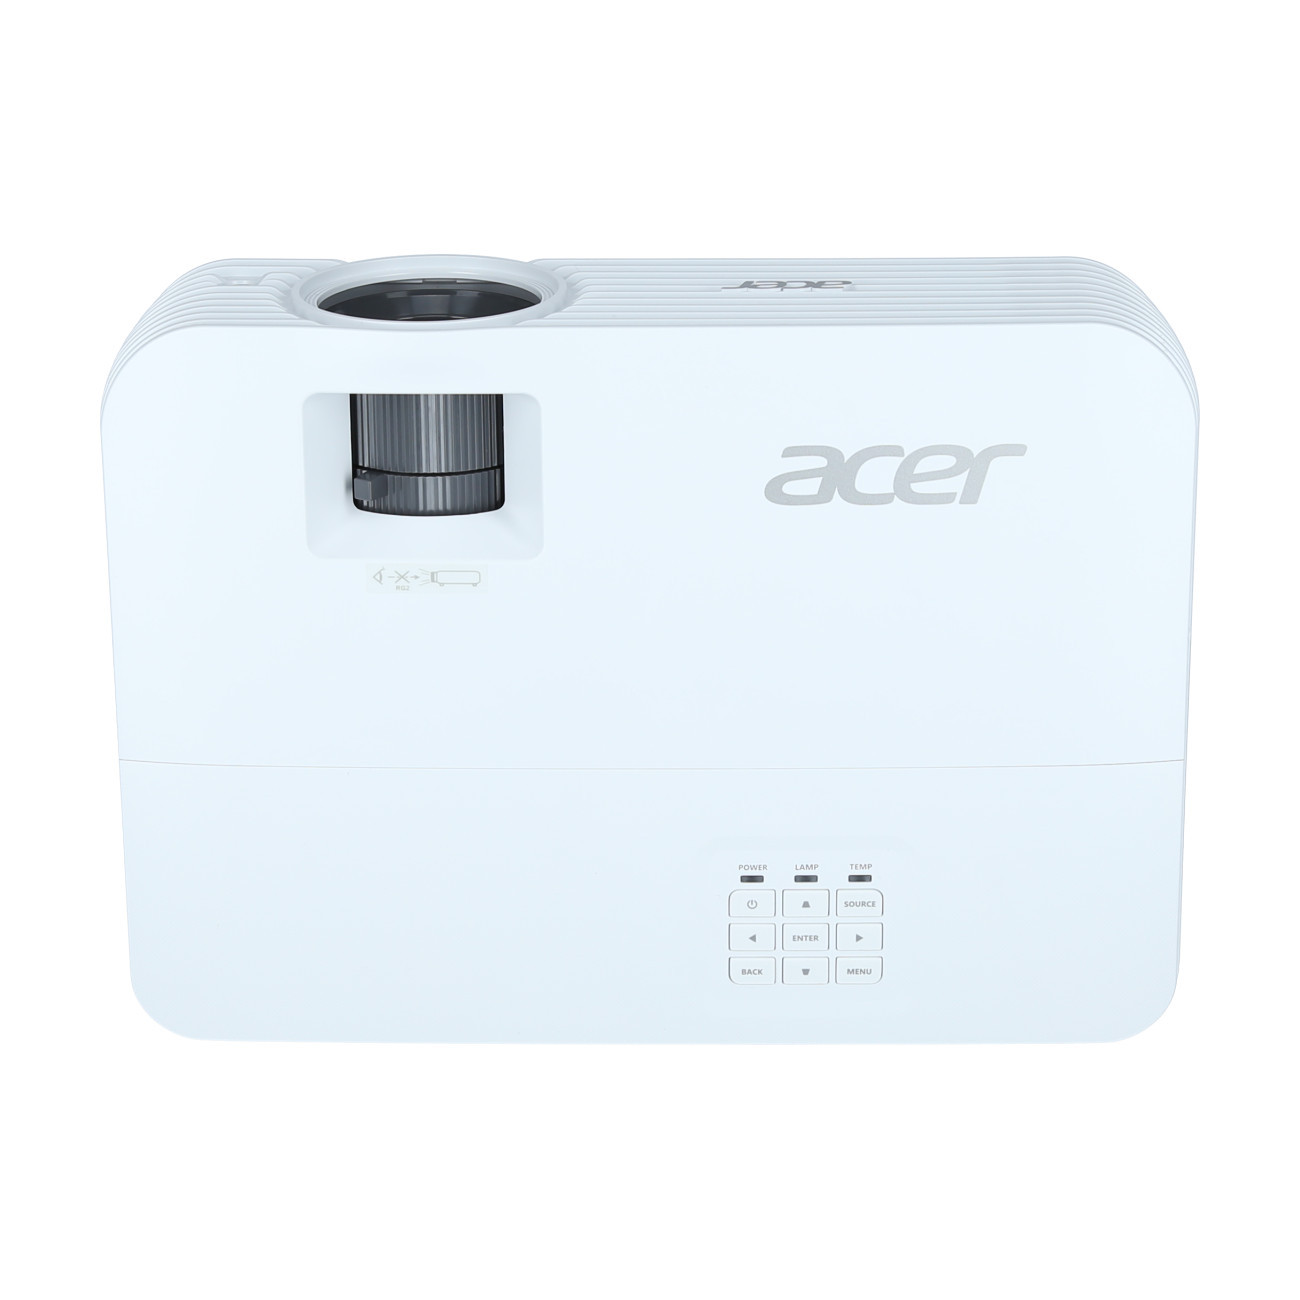 Vorschau: Acer H6543Ki Heimkino Beamer mit 4500 ANSI-Lumen und Full-HD Auflösung - Demo